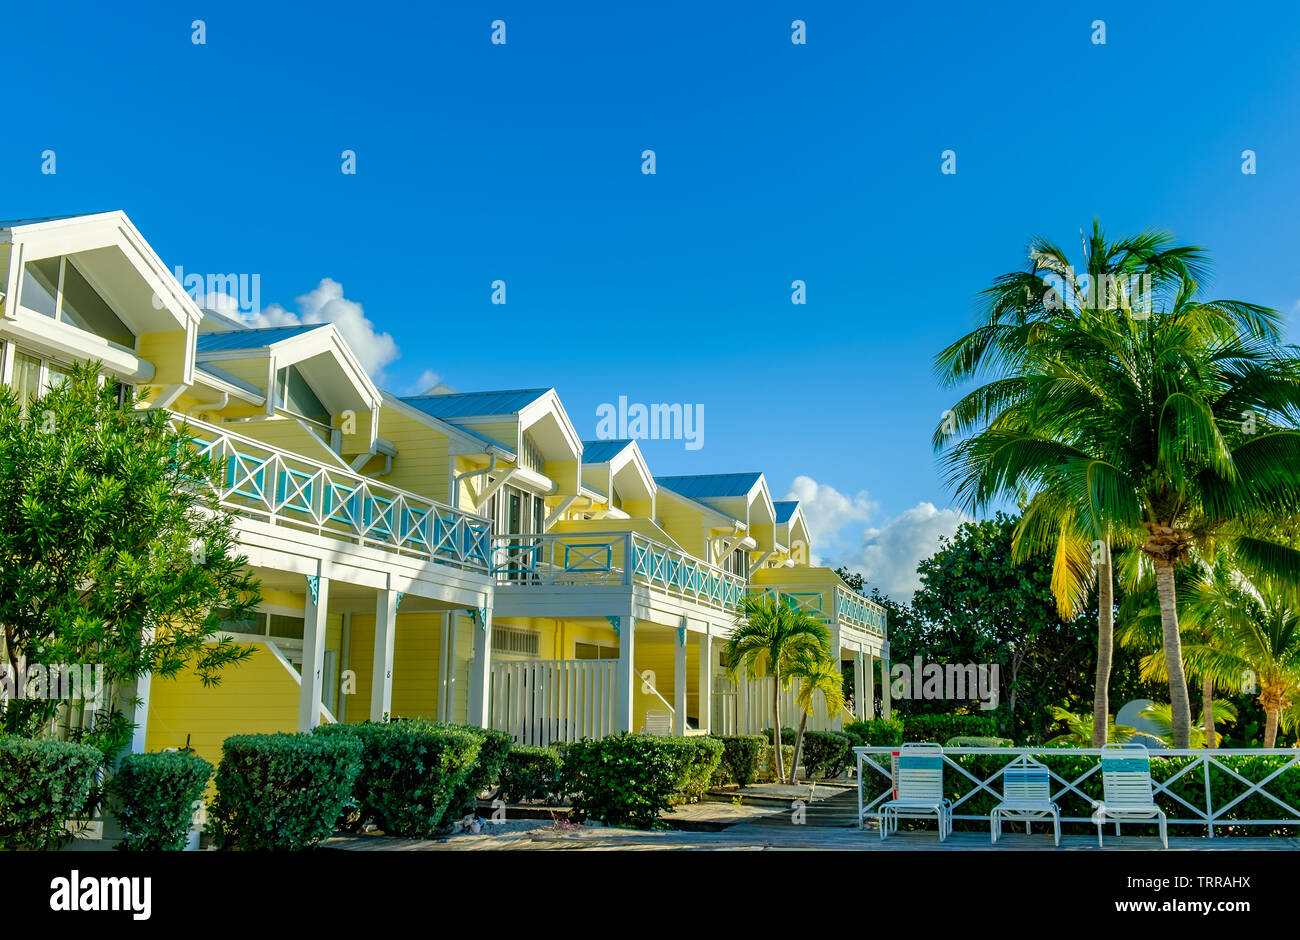 Little Cayman, îles Caïman, novembre 2018, le Conch Club abrite près de la mer des Caraïbes Banque D'Images